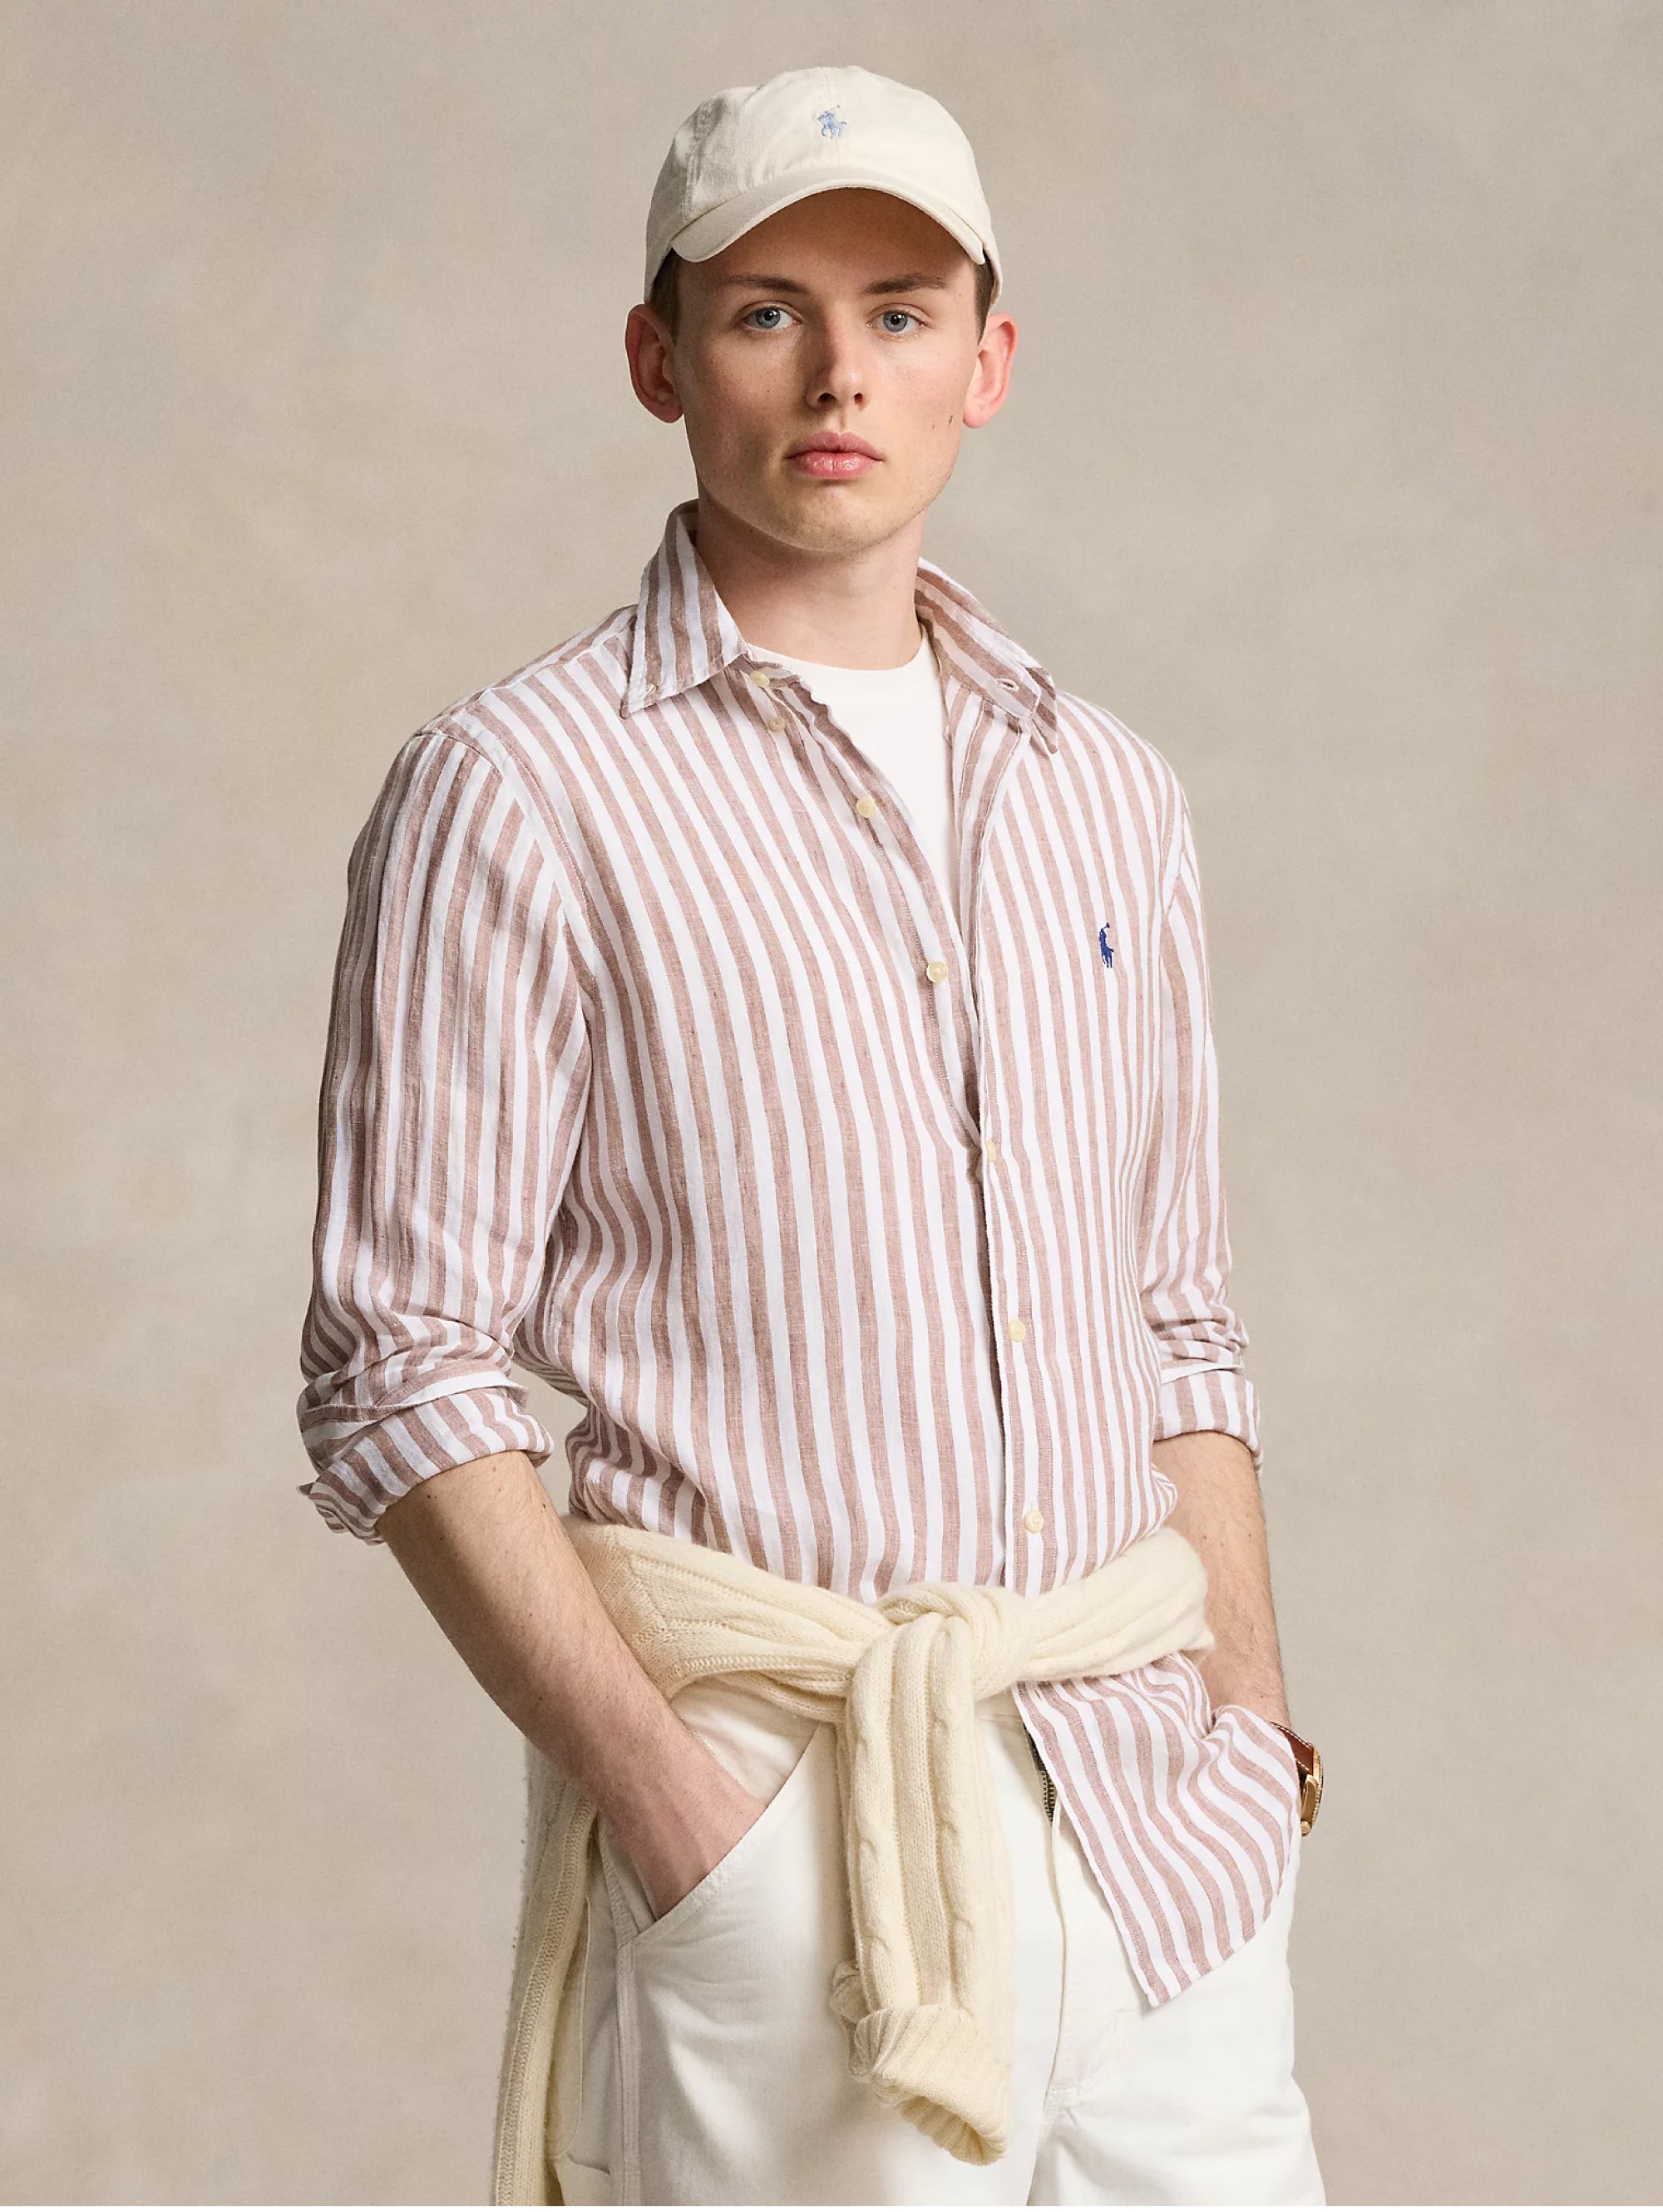 Custom Fit Striped Shirt in Khaki/White Linen